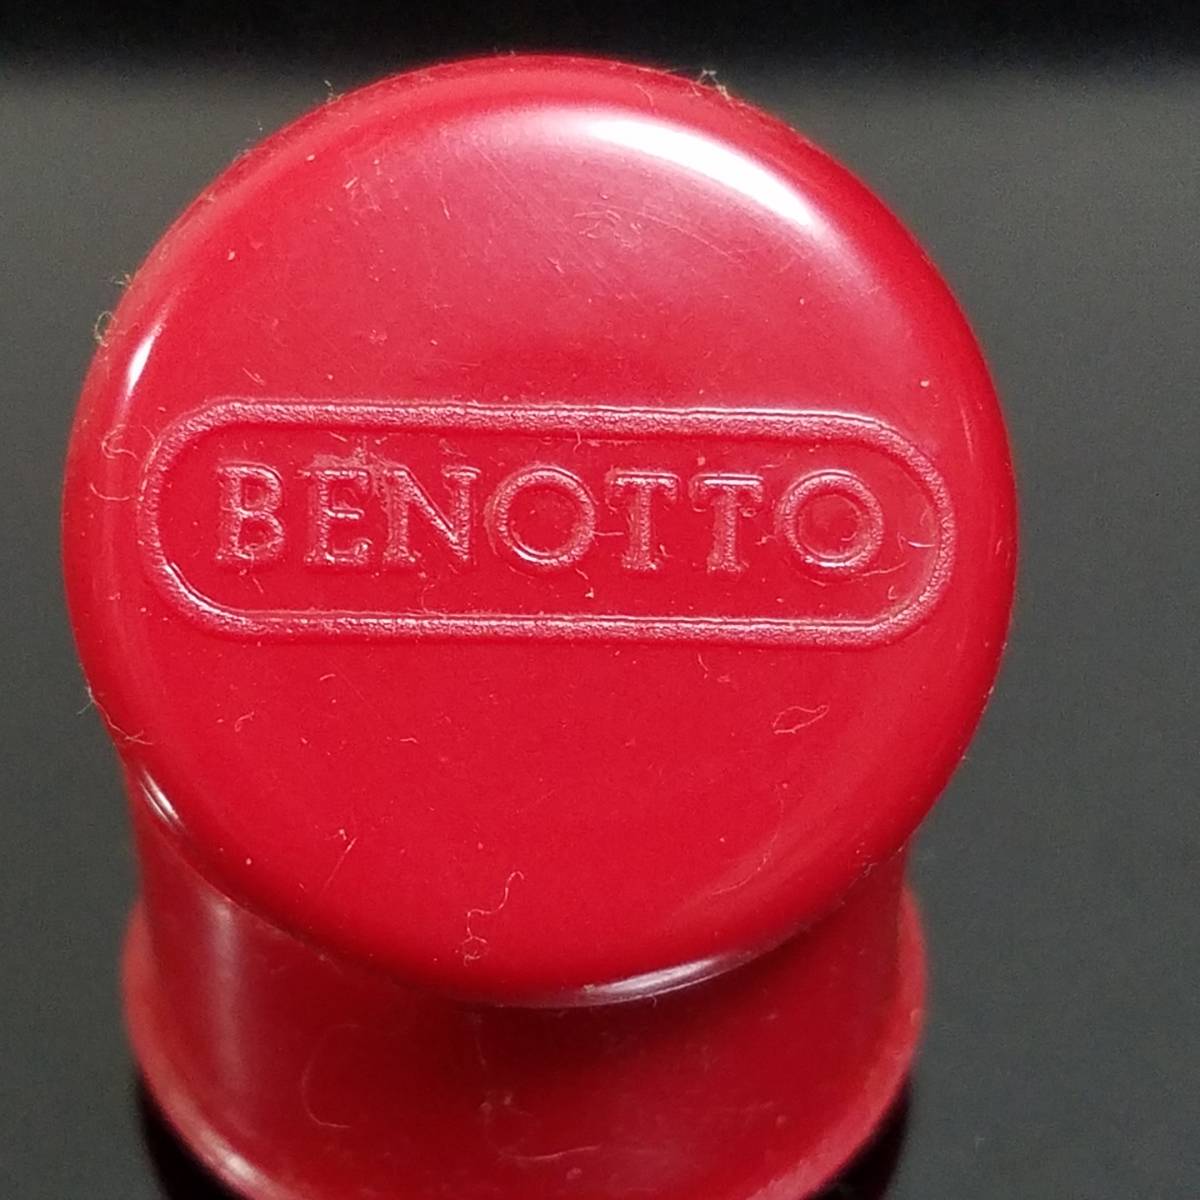 New Old Stock (NOS) BENOTTO「 バーエンド 1台分 」 未使用品 コレクション ベノット　 ヴィンテージ_画像10